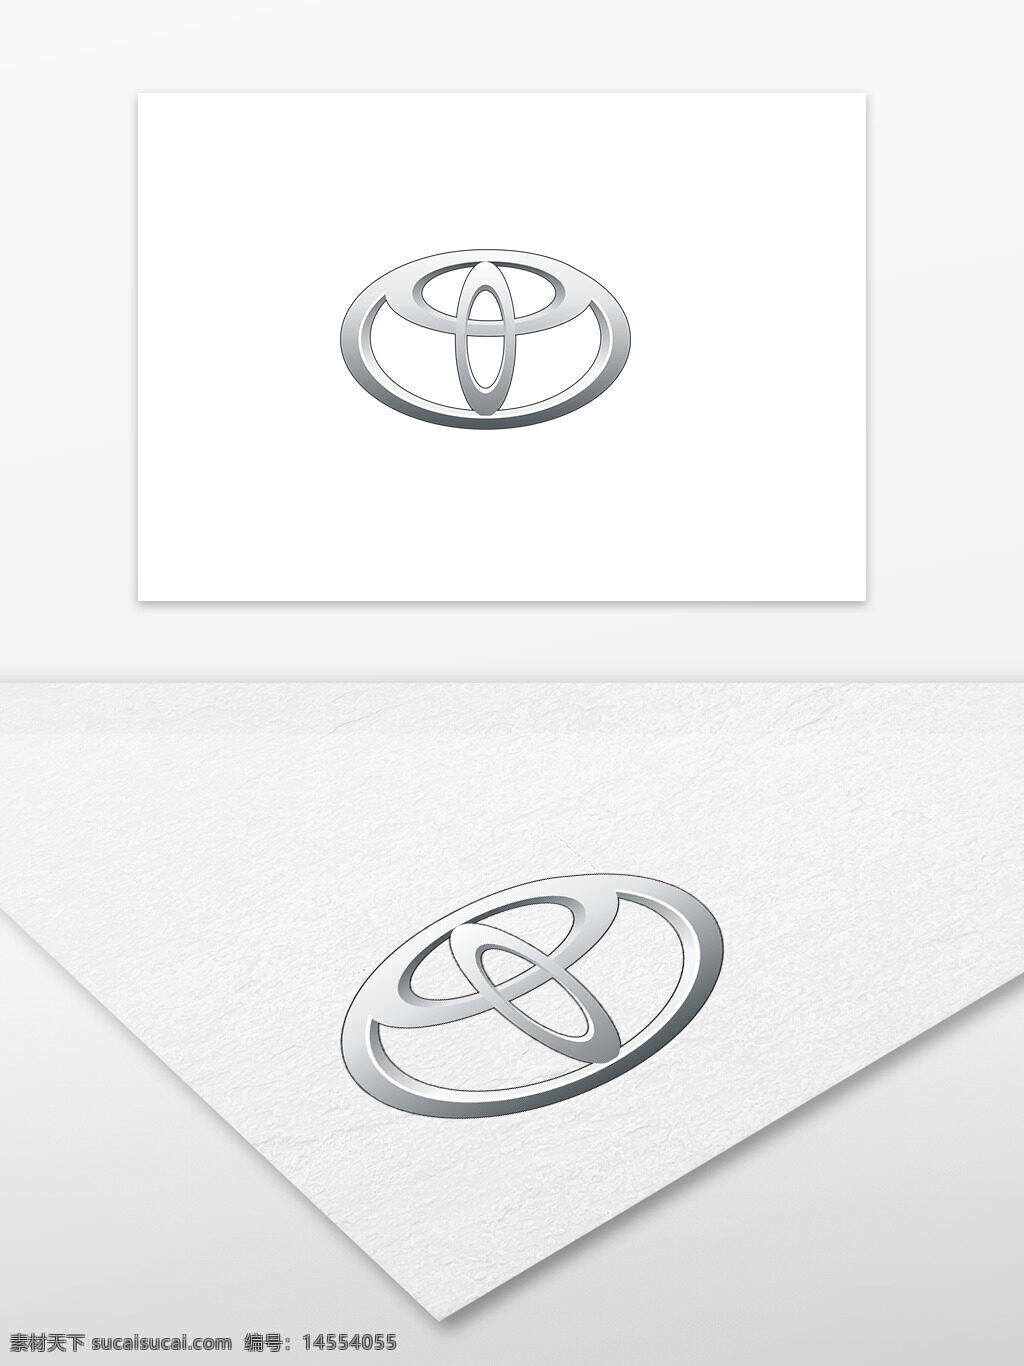 丰田 汽车标志 矢量文件 cdr 汽车logo